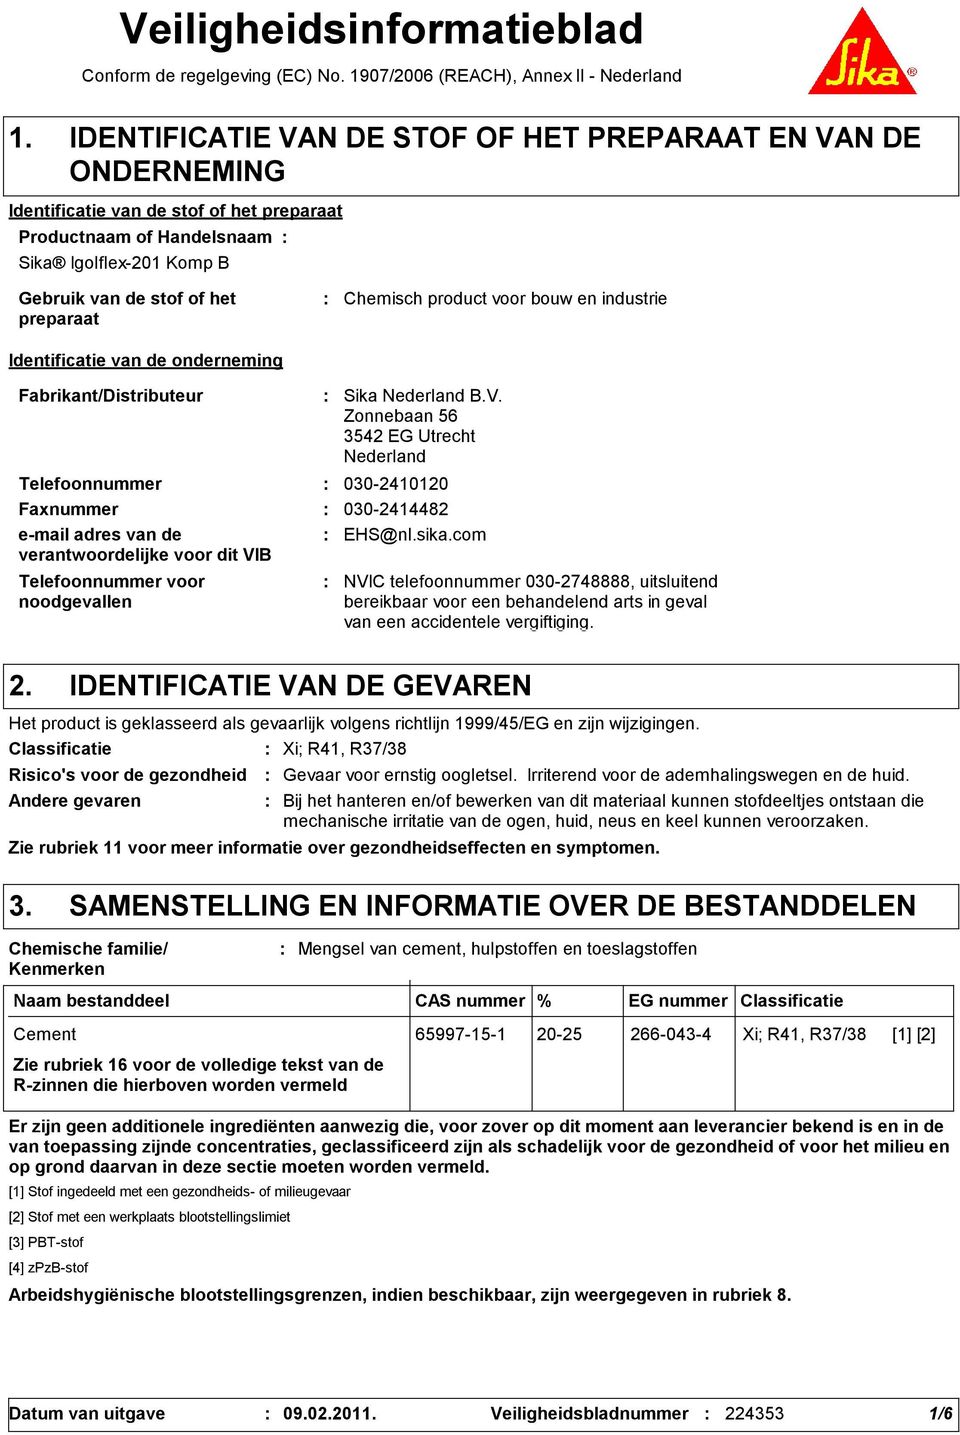 Chemisch product voor bouw en industrie Identificatie van de onderneming Fabrikant/Distributeur Telefoonnummer voor noodgevallen Sika Nederland B.V.